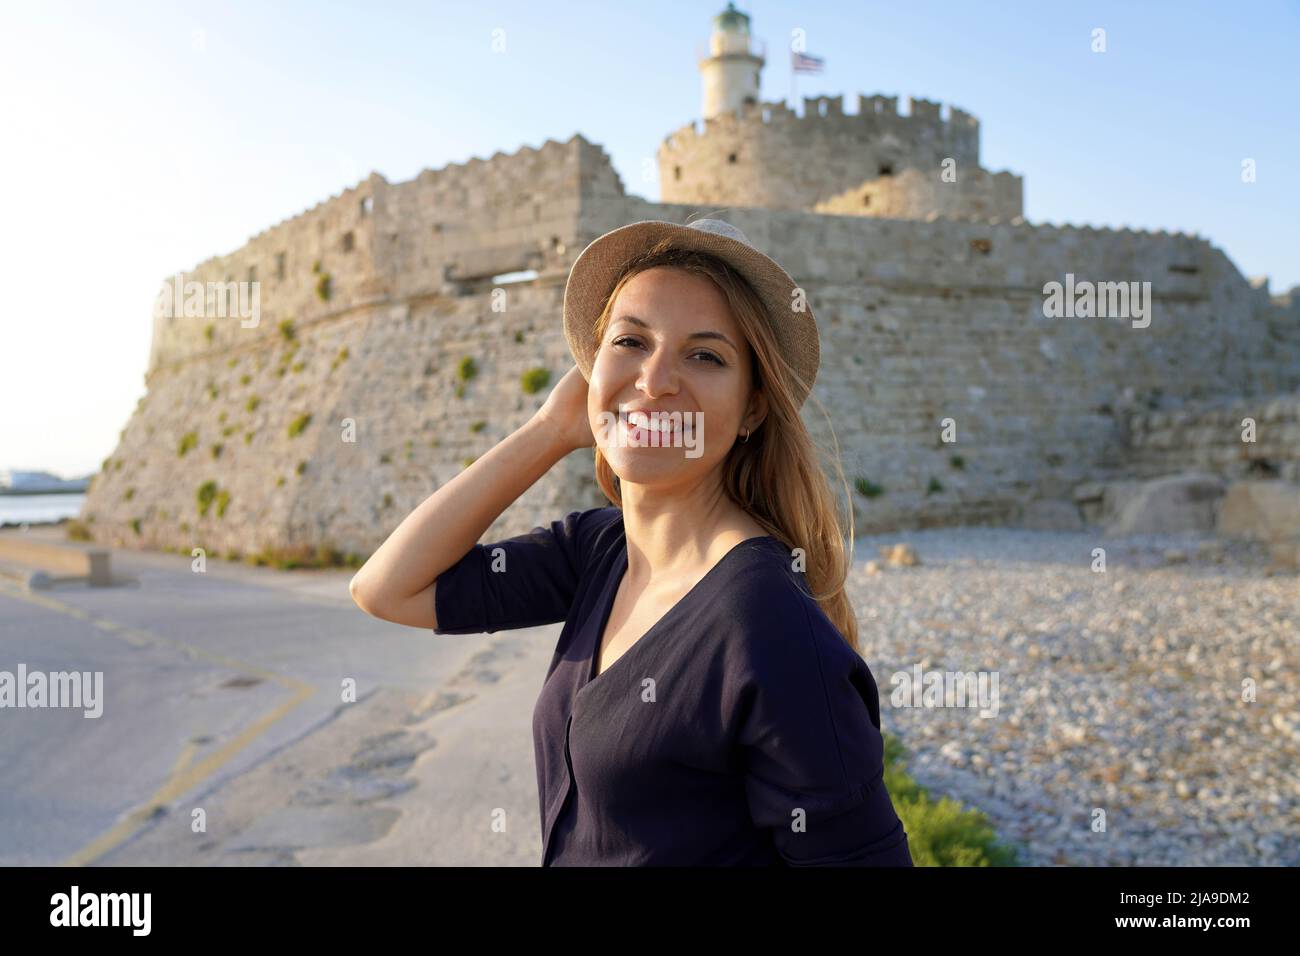 Portrait d'une jeune touriste à l'île de Rhodes avec la Tour et le fort de Saint Nicolas, Grèce Banque D'Images